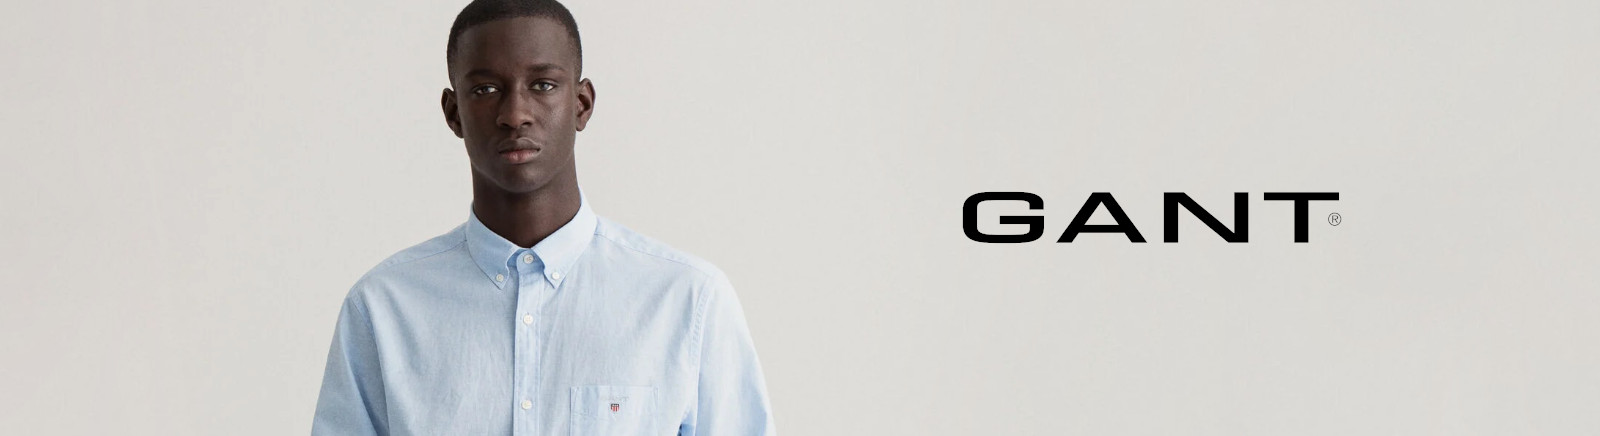 Prange: Gant Stiefeletten für Herren online shoppen